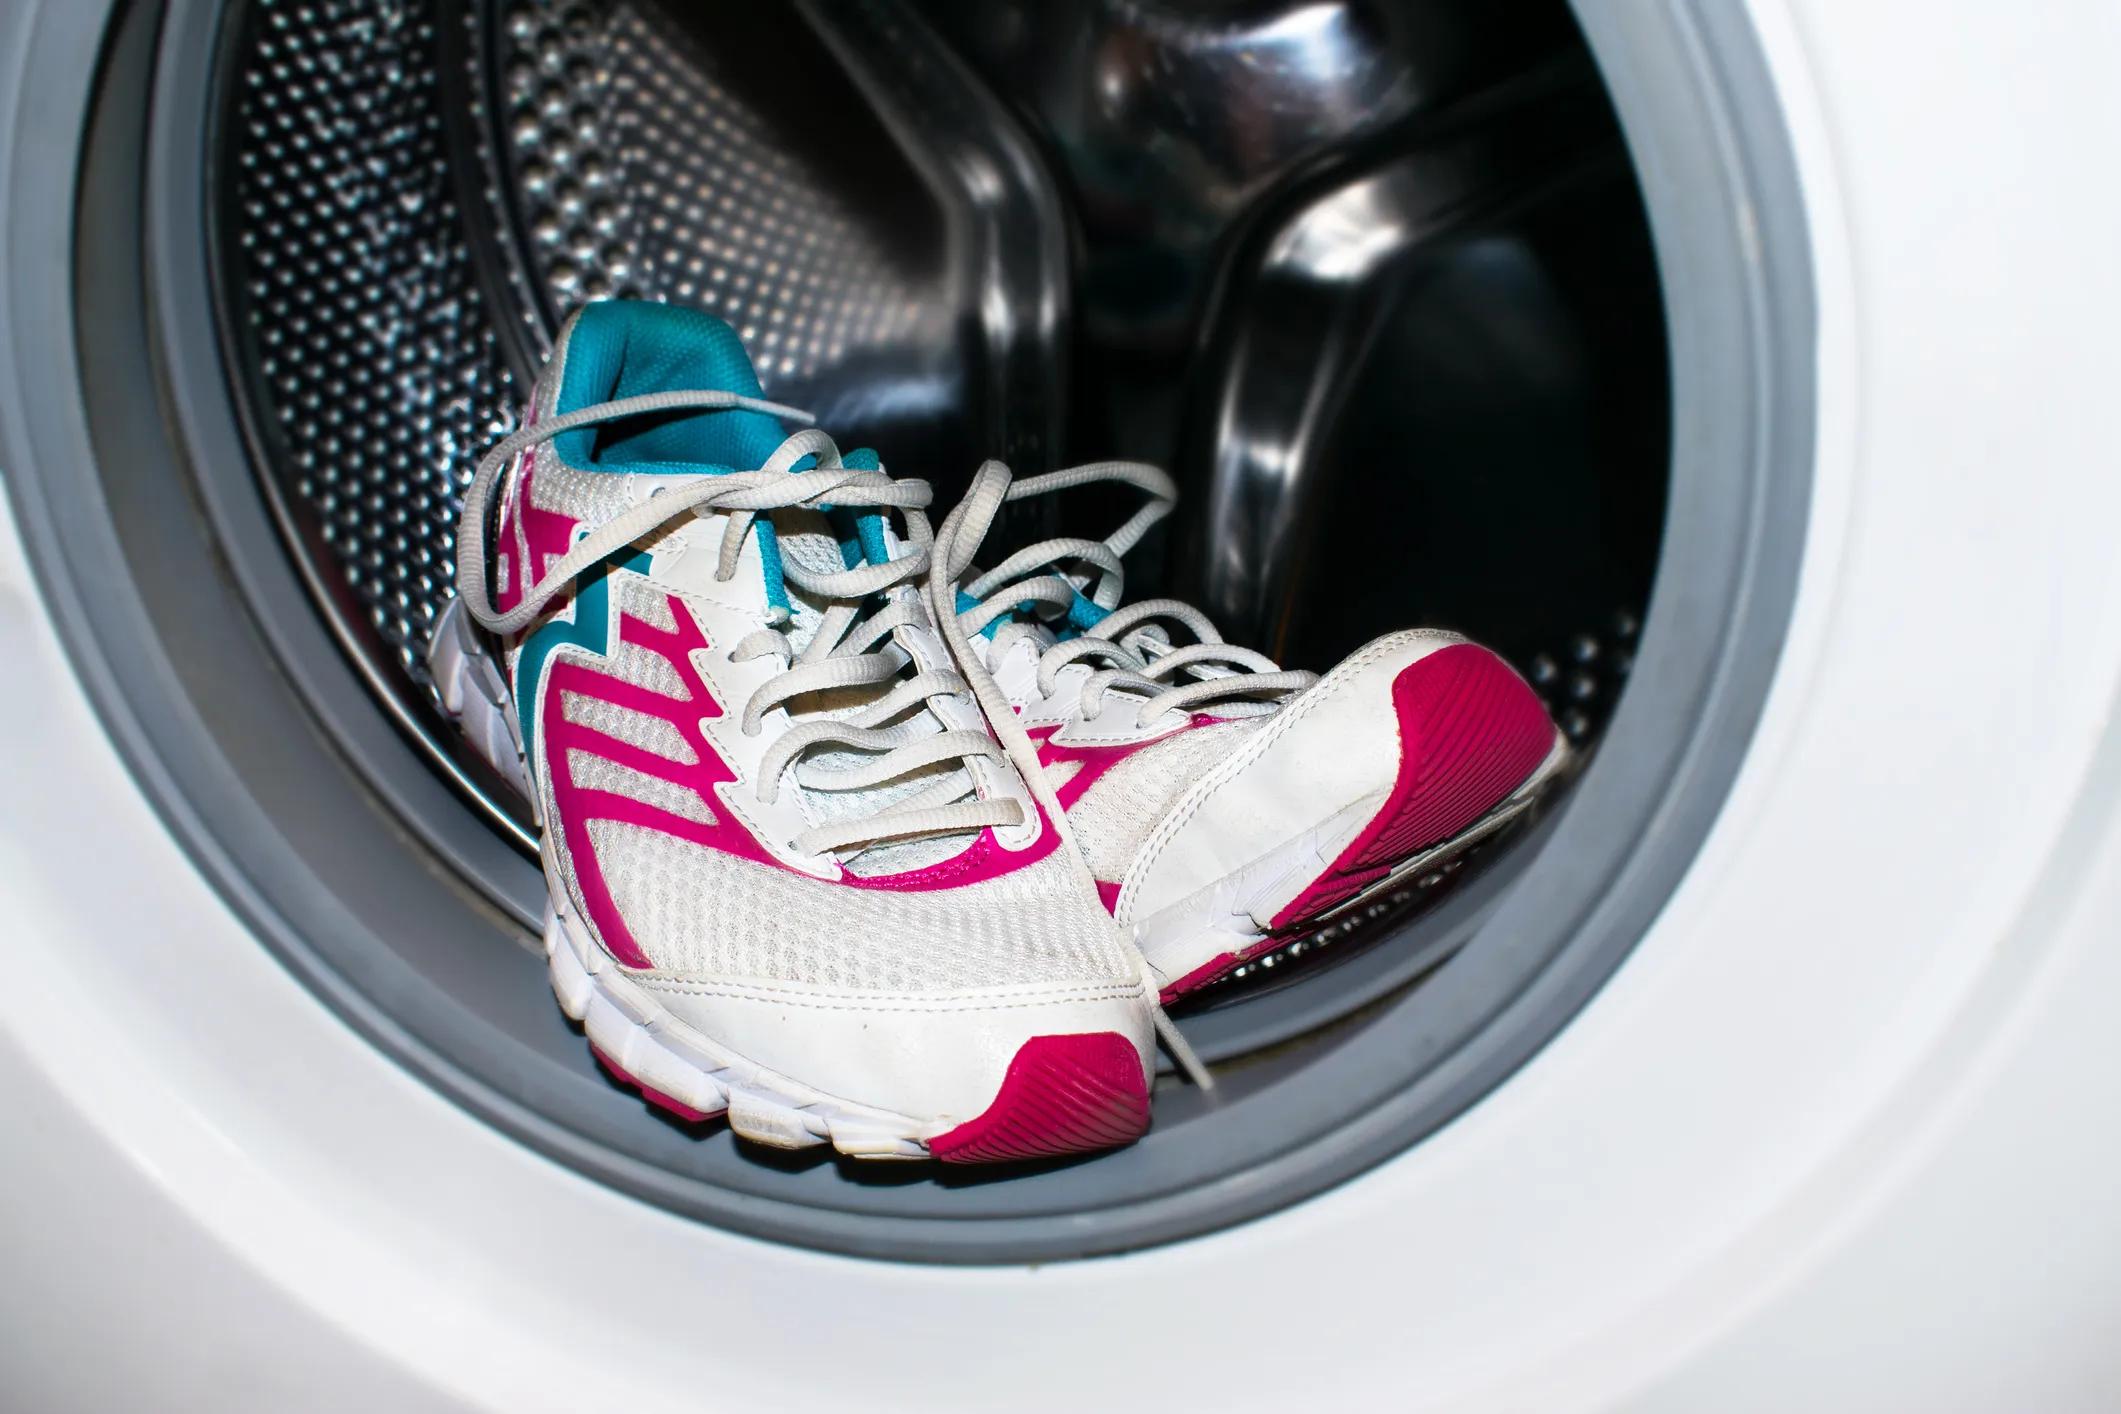 lavar zapatillas geox en lavadora - Cómo lavar una prenda Geox